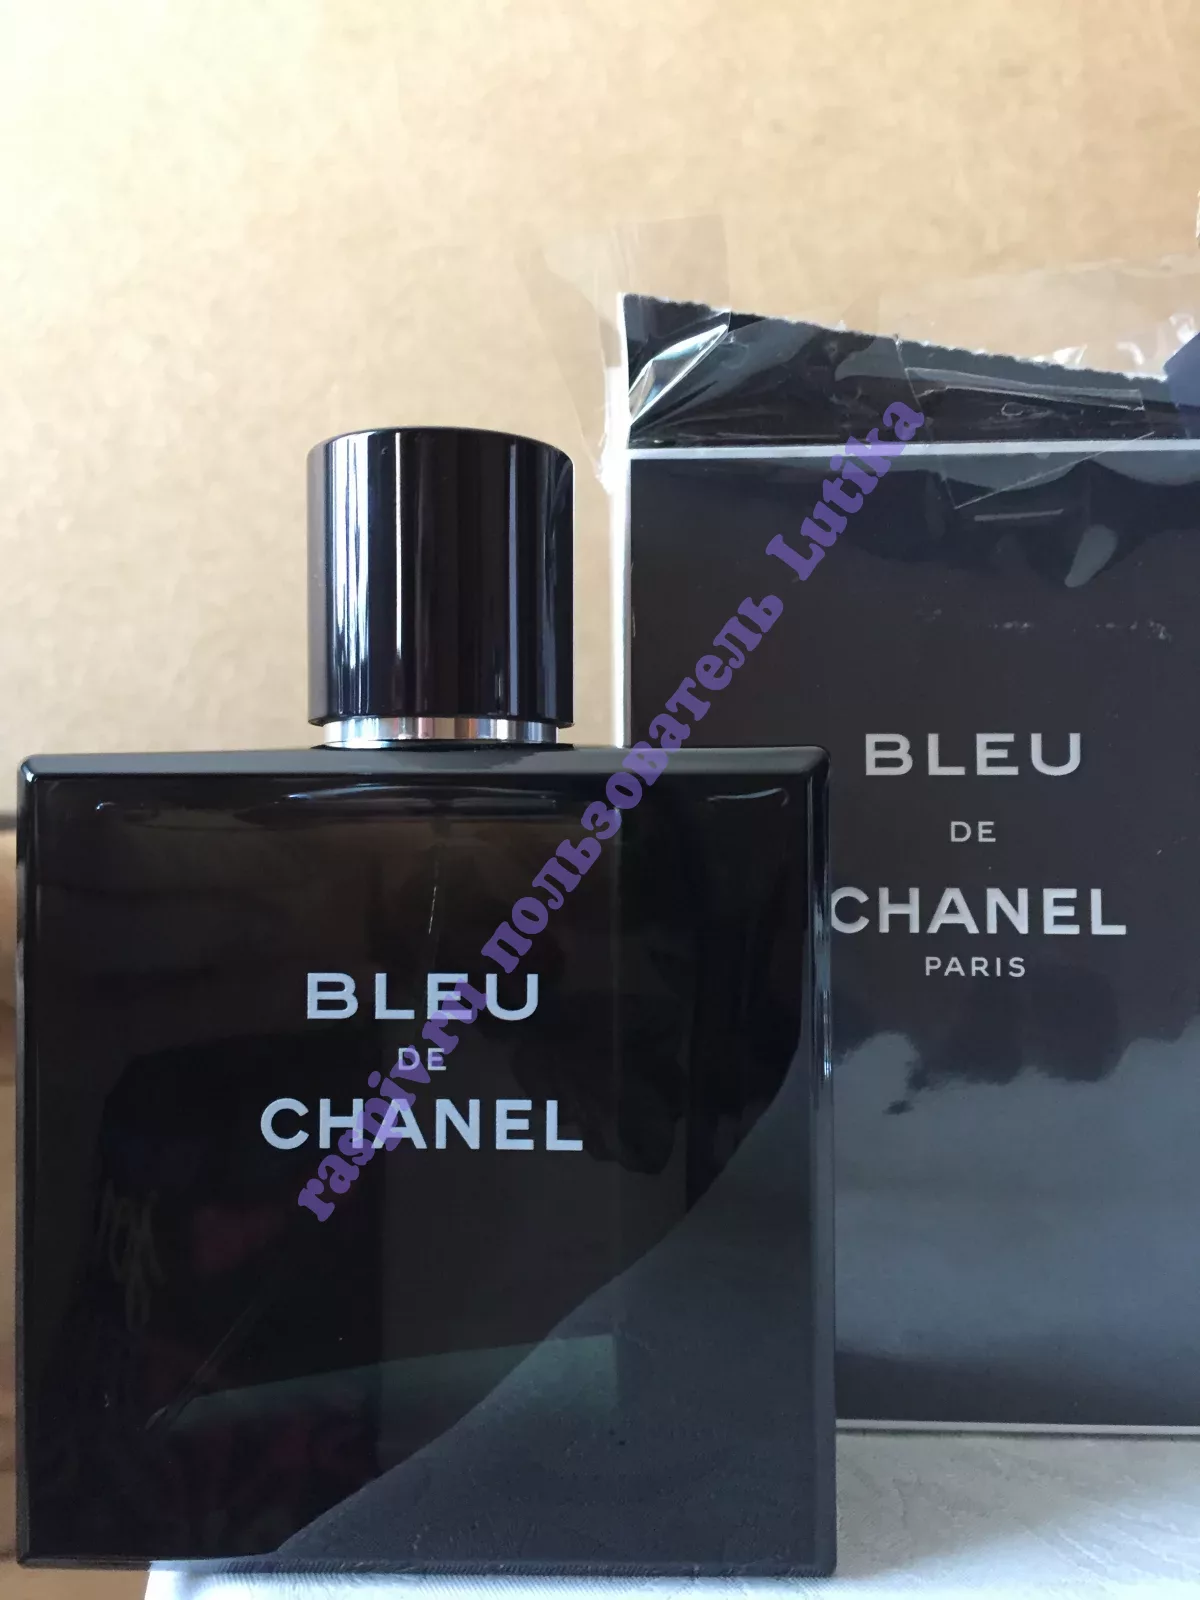 Chanel bleu отзывы. Chanel bleu de Chanel 10 мл. Bleu de Chanel картинка. Bleu de Chanel отзывы. Chanel bleu в руках.